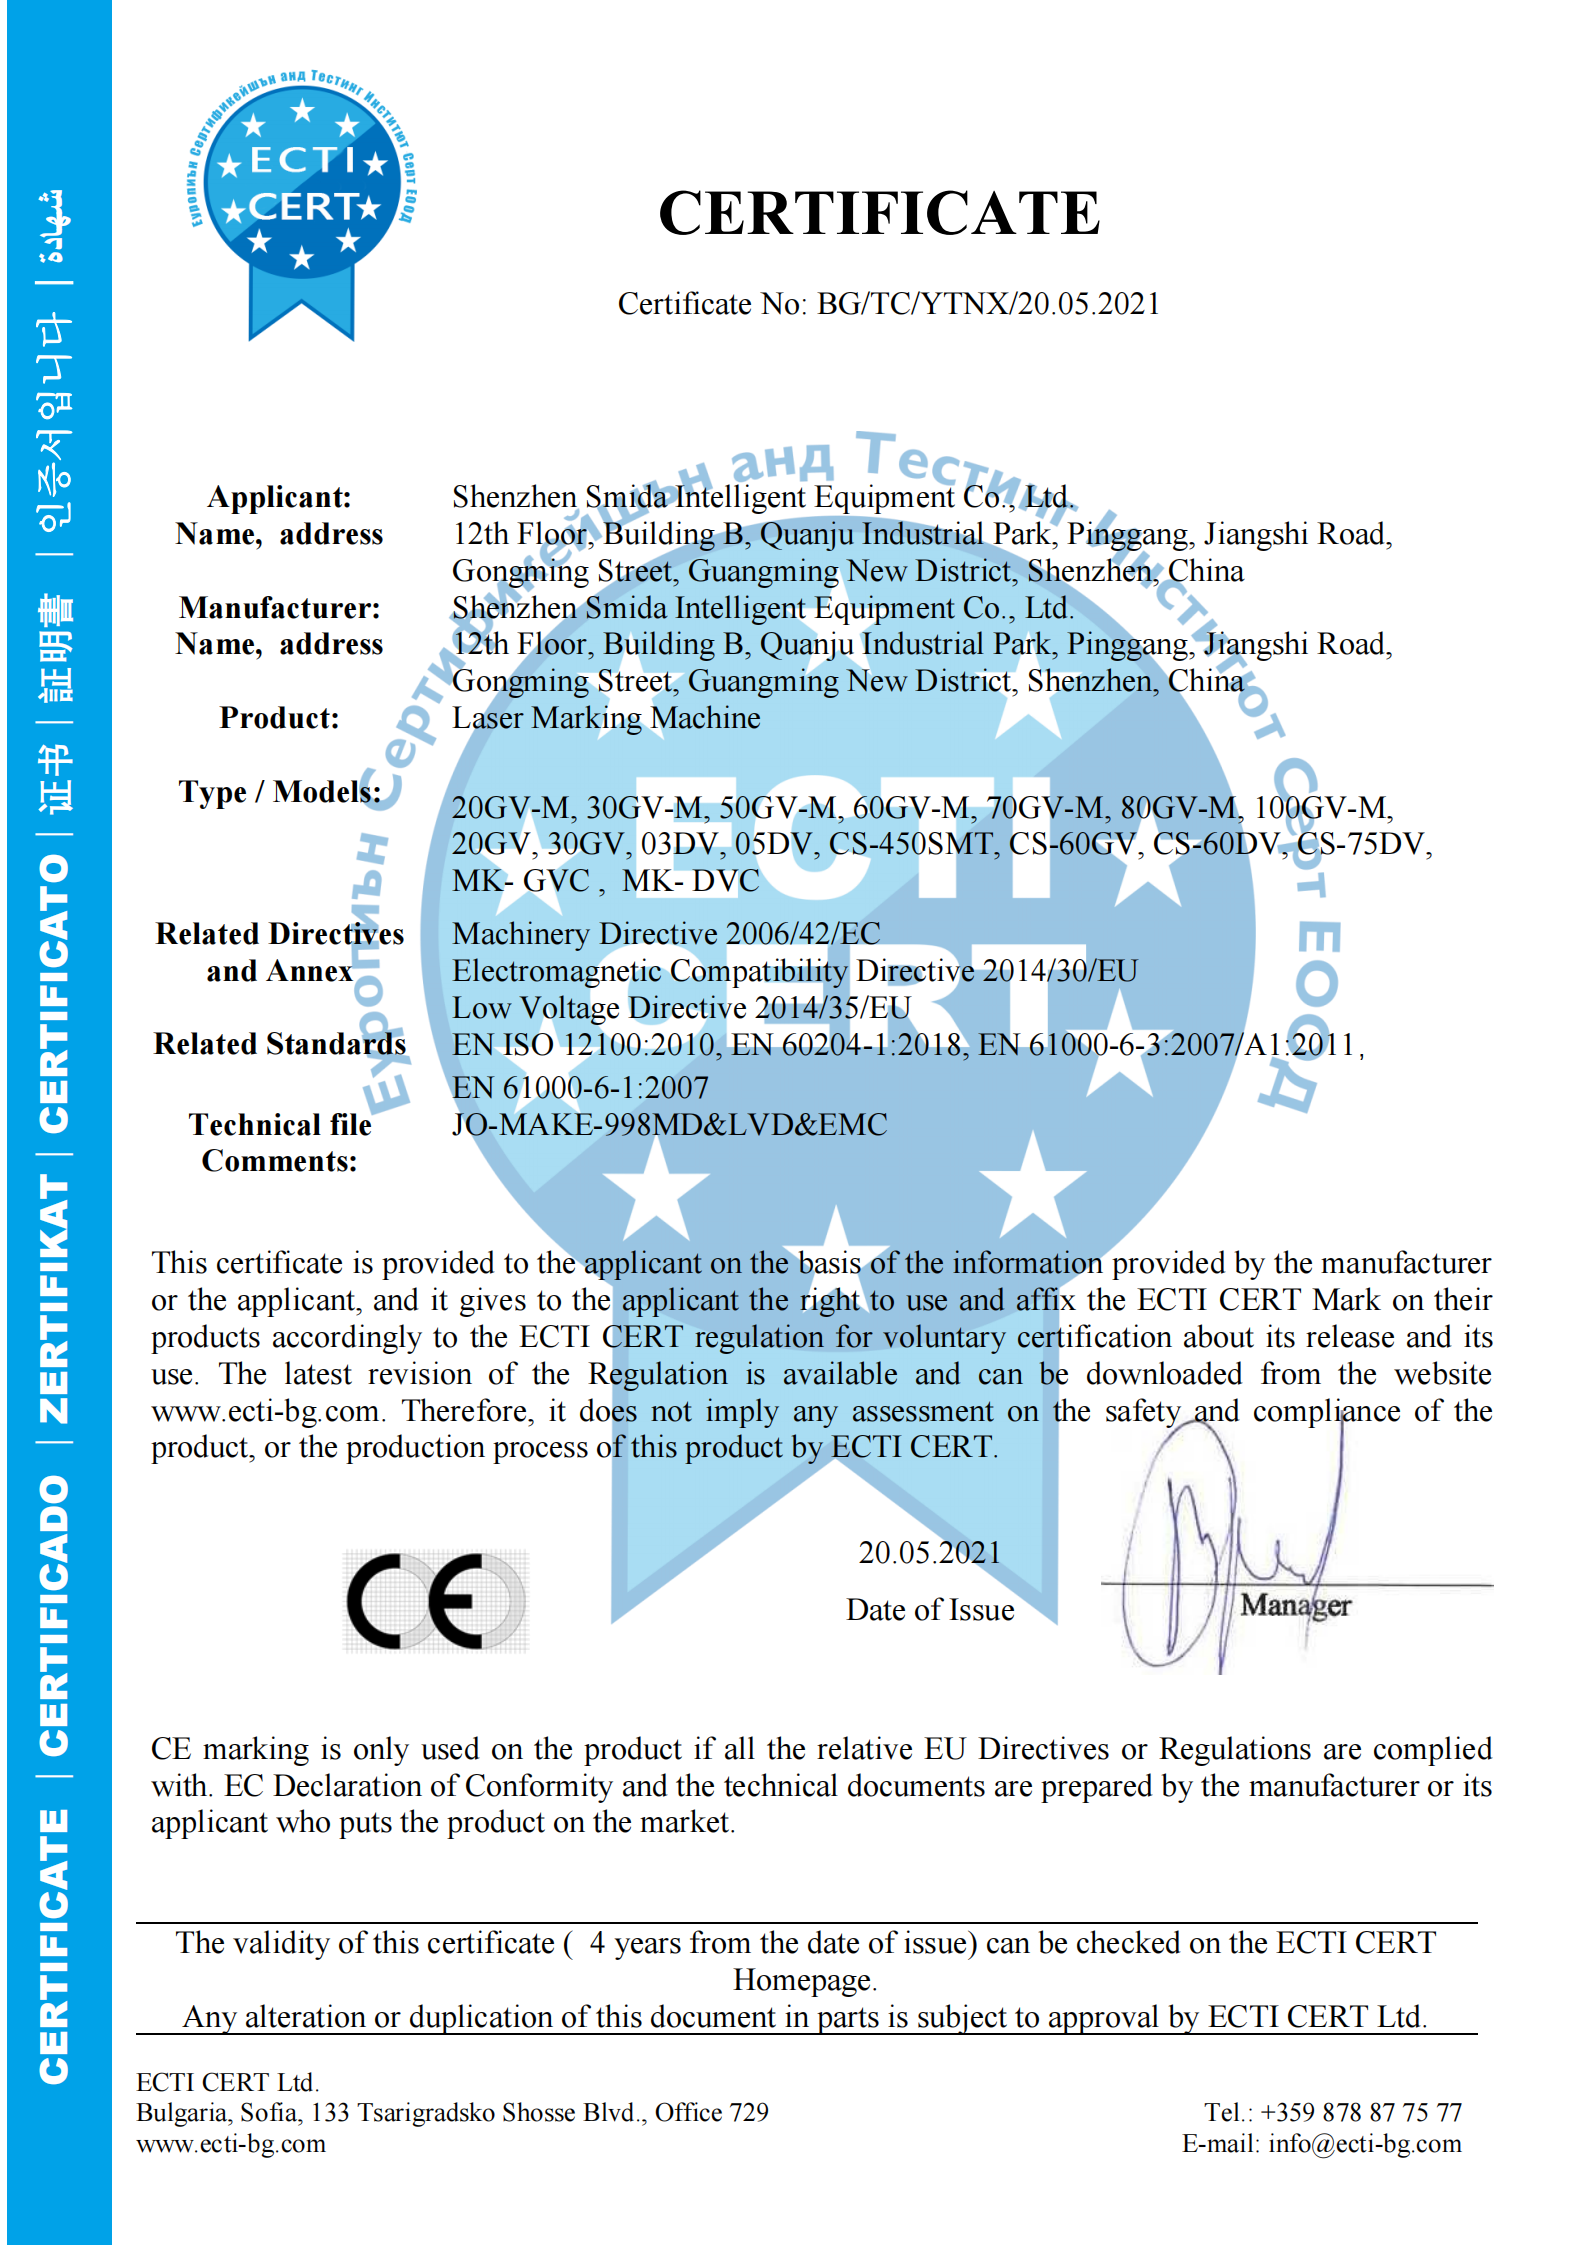 Přidána CE certifikace pro laserový značkovací stroj